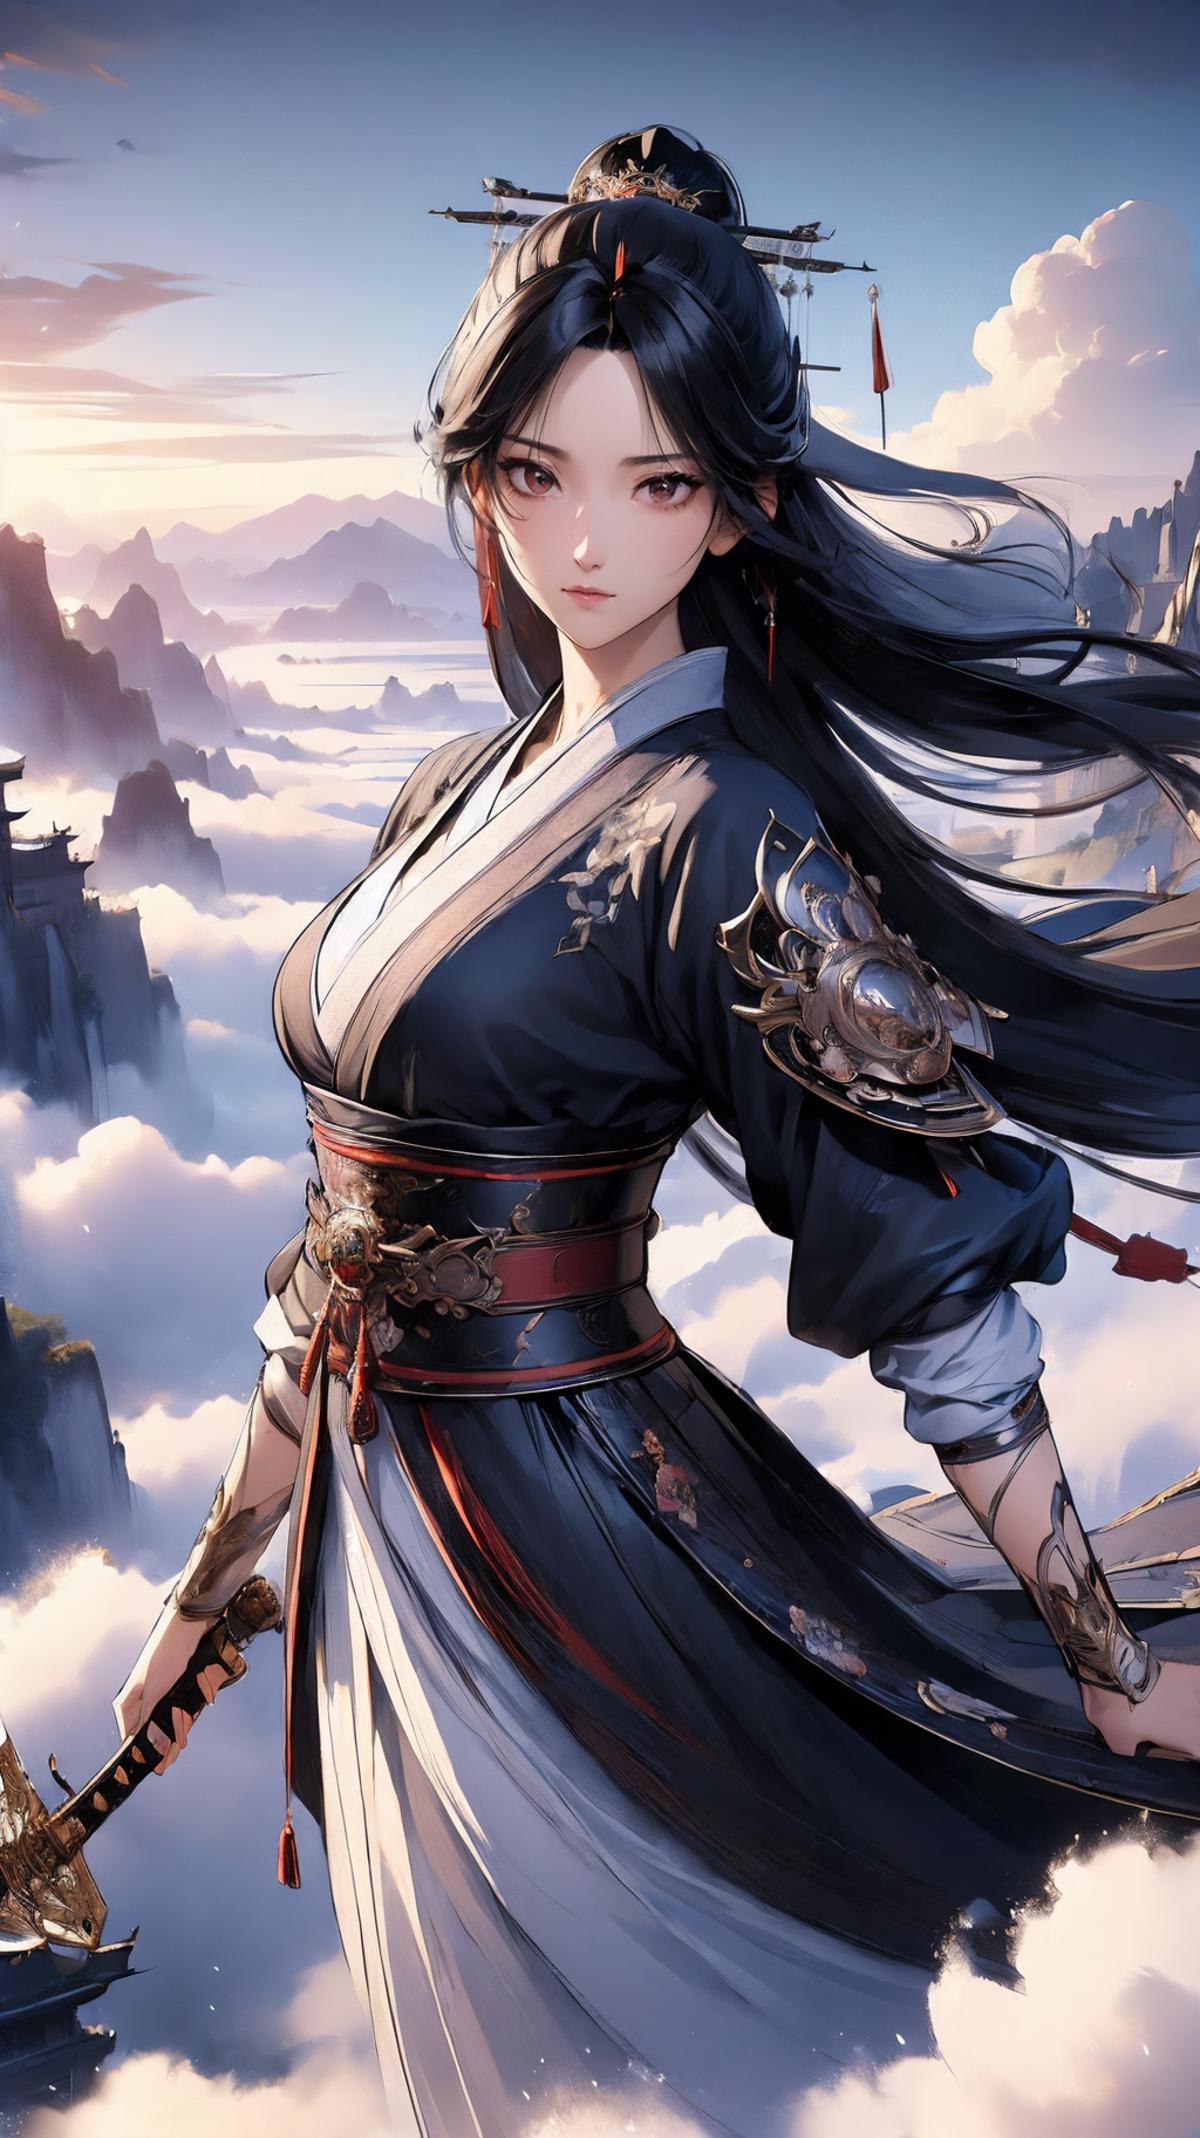 Swordism Girl image by BerserkFG